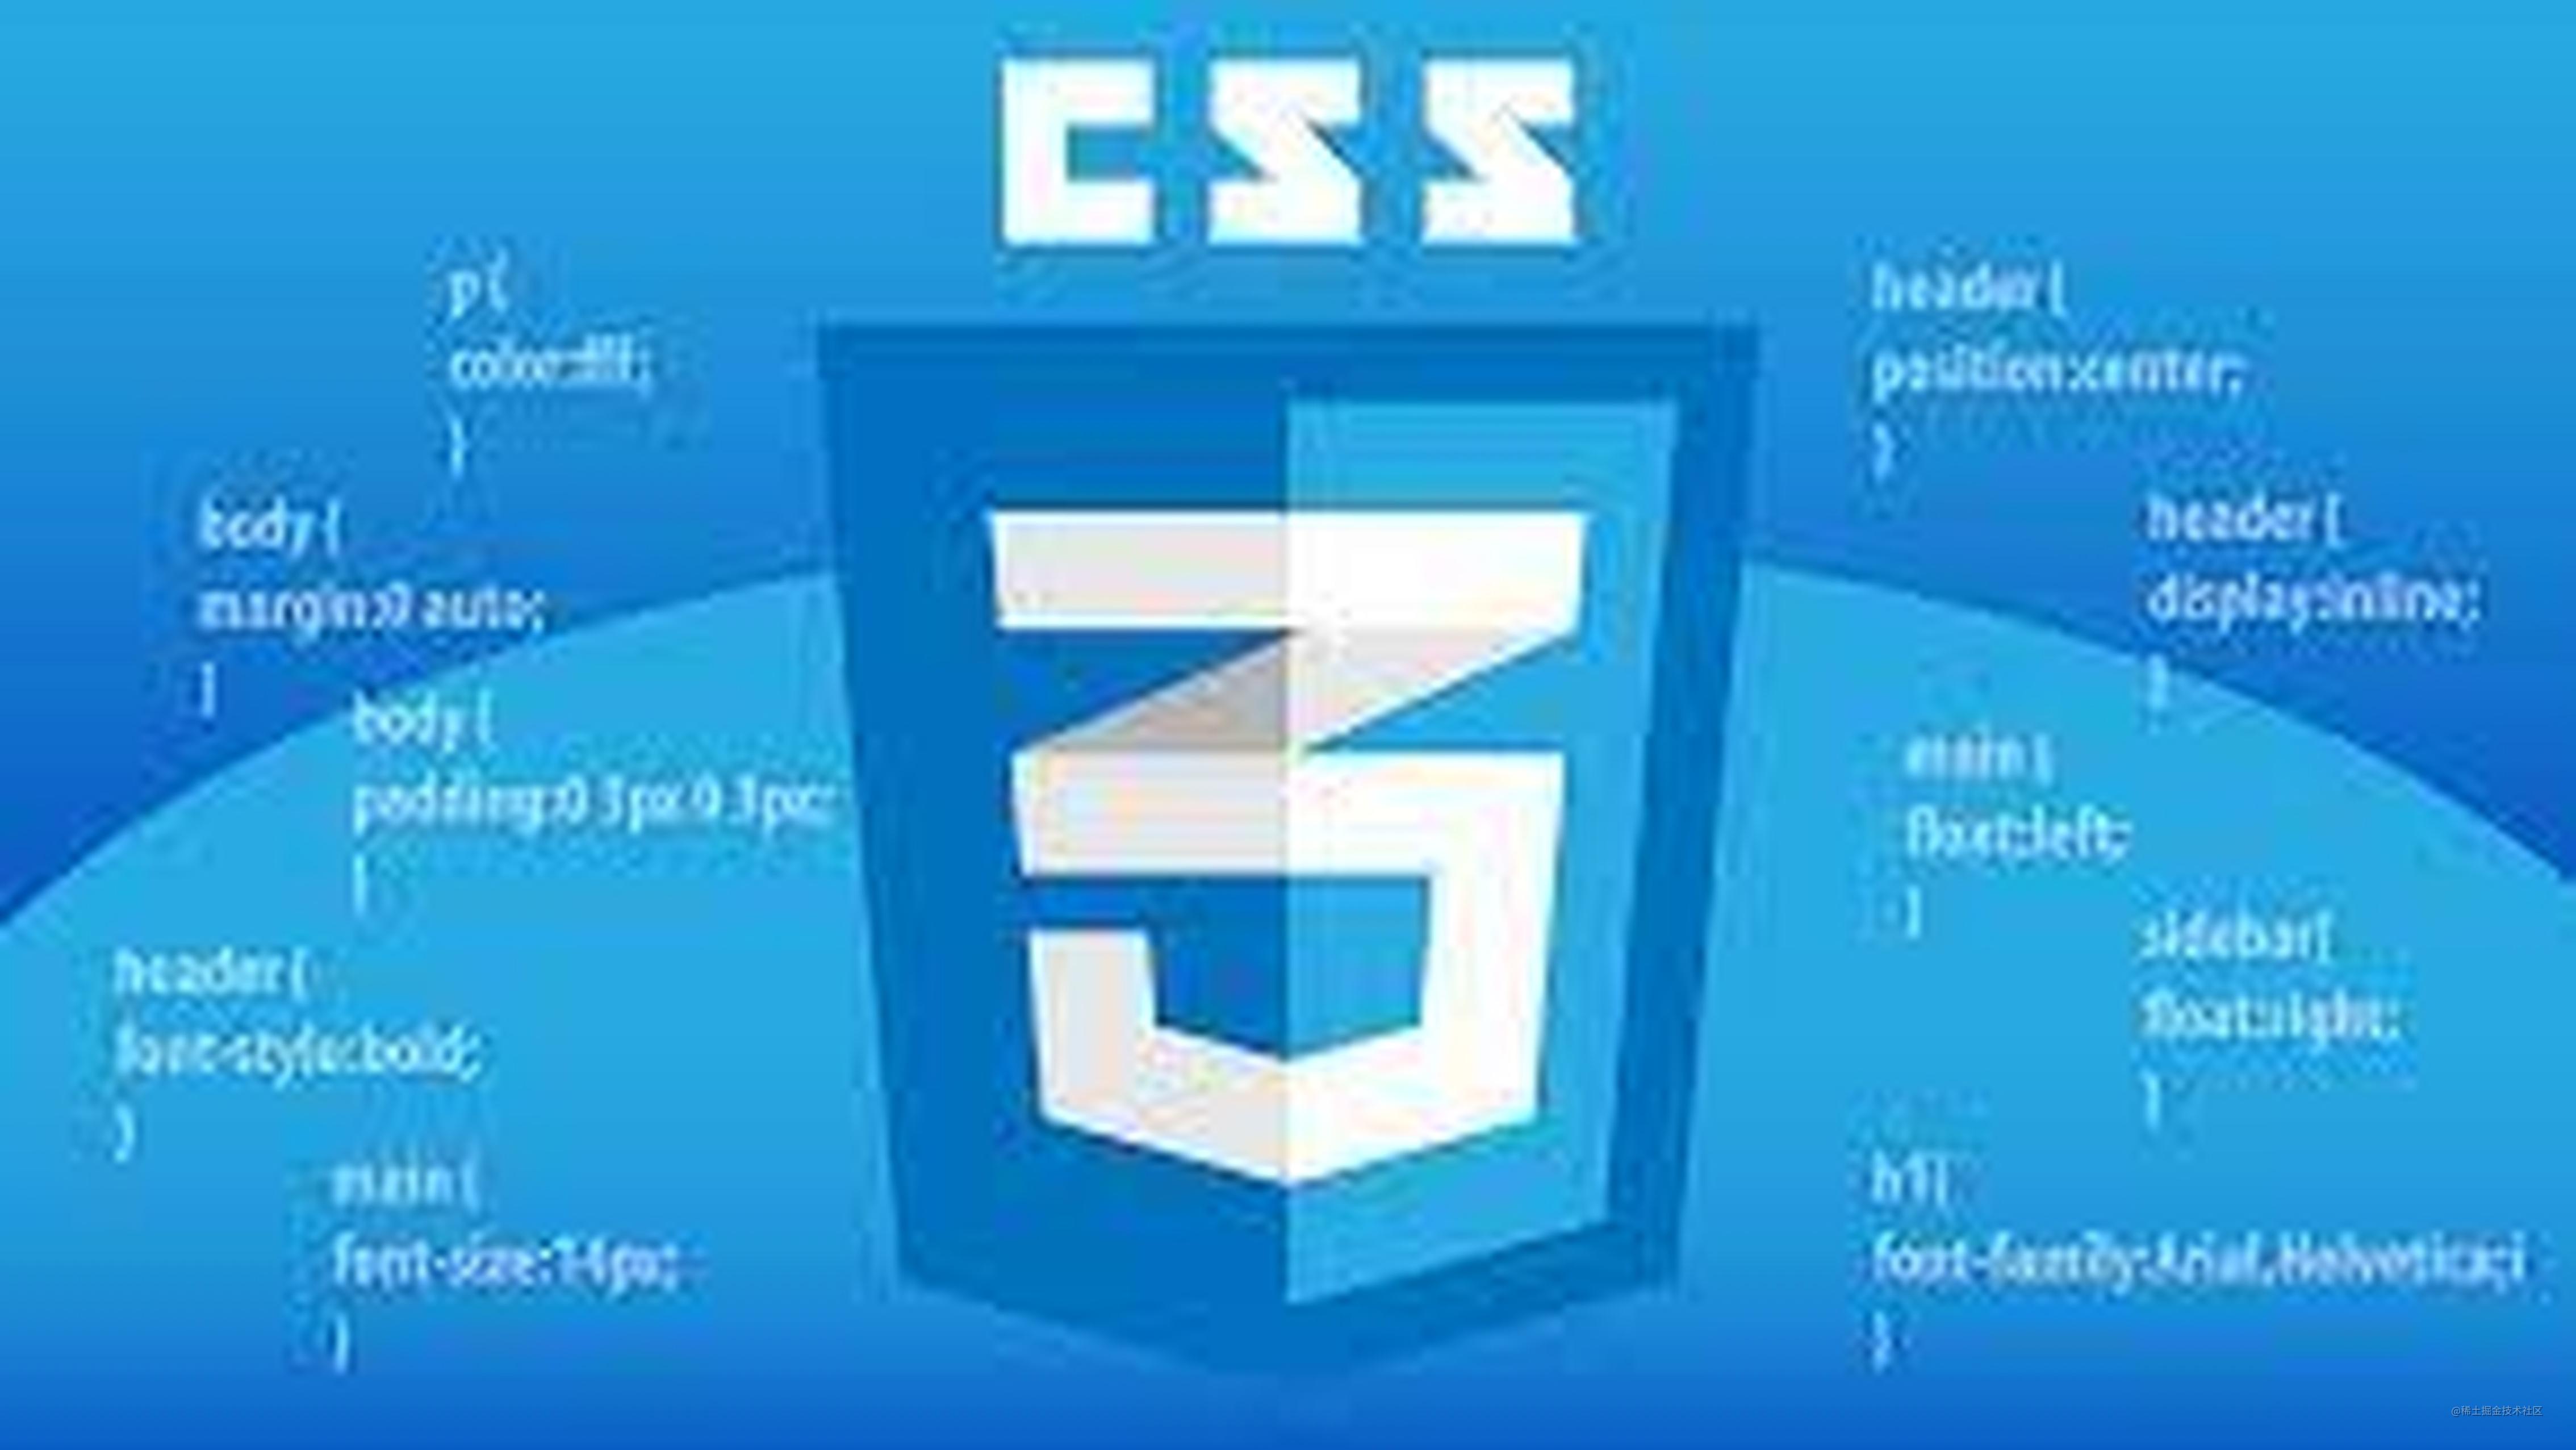 CSS - vertical-align